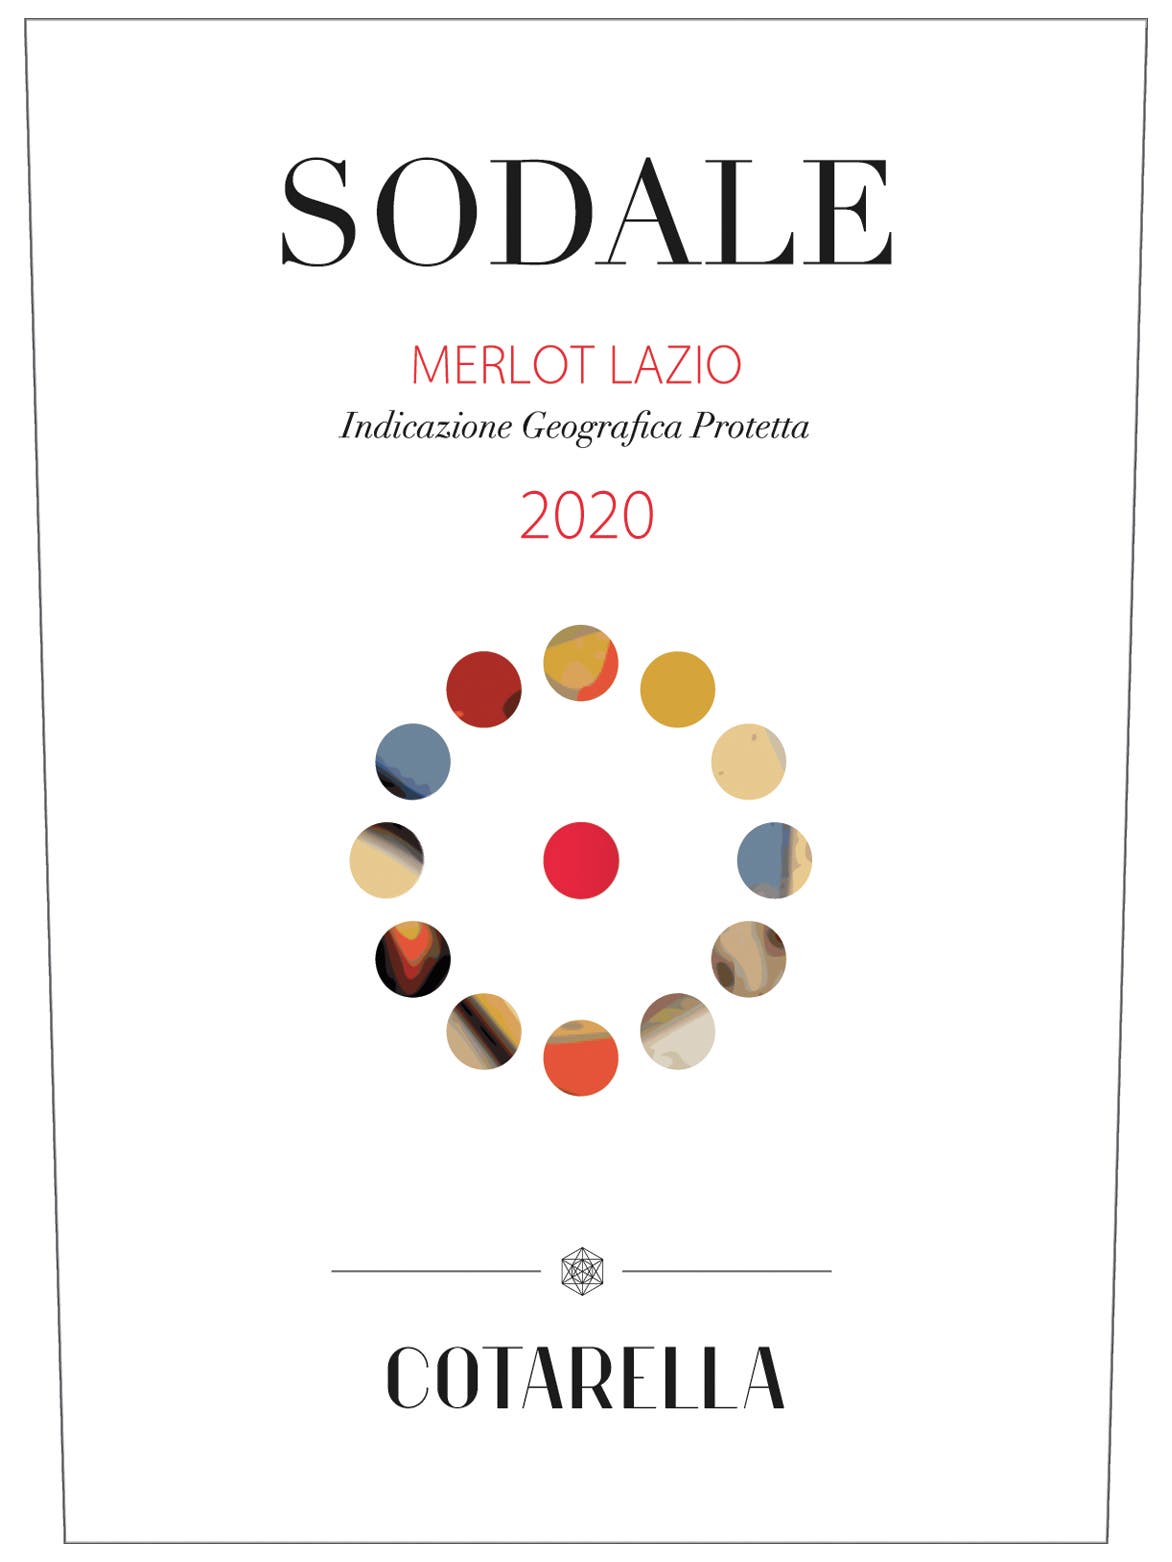 Cotarella 2020 Sodale Merlot Merlot (Lazio)